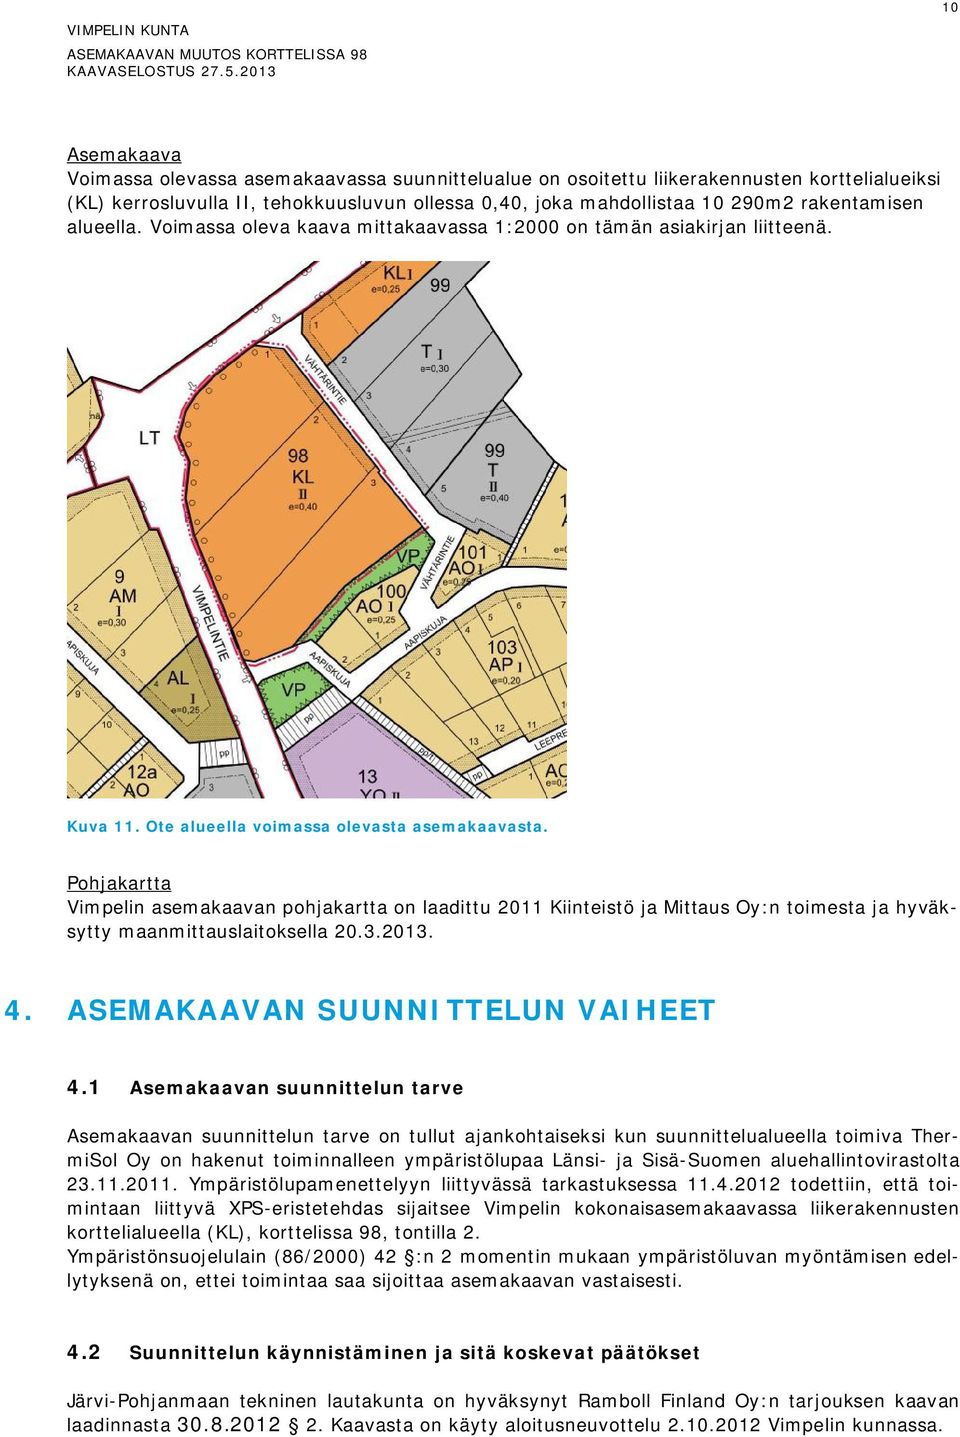 Pohjakartta Vimpelin asemakaavan pohjakartta on laadittu 2011 Kiinteistö ja Mittaus Oy:n toimesta ja hyväksytty maanmittauslaitoksella 20.3.2013. 4. ASEMAKAAVAN SUUNNITTELUN VAIHEET 4.